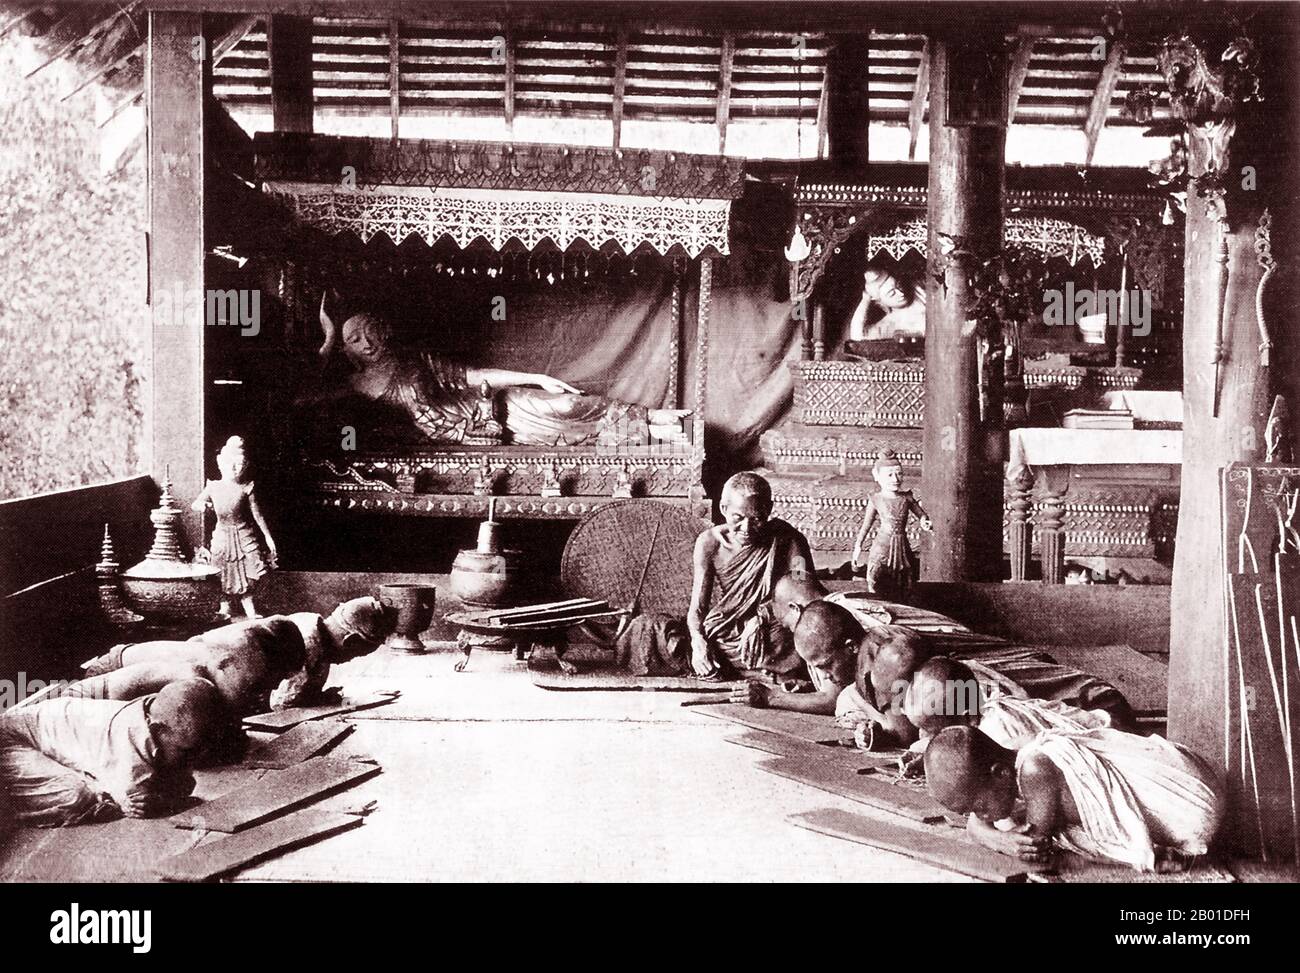 Birmanie: De jeunes novices bouddhistes étudient dans une école monastique dans un village rural birman. Photo de Max Henry Ferrars (1846-1933) et Bertha Ferrars (1845-1937), 1900. Les moines bouddhistes collectent des almes - la nourriture préparée par des dévotés et des laïcs qui font du mérite en les faisant don - chaque matin en Birmanie et dans la plupart des pays bouddhistes Theravada. C'est leur seule nourriture pour la journée. Les moines ne mangent pas après 12 heures. La légende attribue la première doctrine bouddhiste en Birmanie à 228 BCE lorsque Sonna et Uttara, deux ambassadeurs de l'empereur Ashoka le Grand de l'Inde, sont venus au pays avec des textes sacrés. Banque D'Images